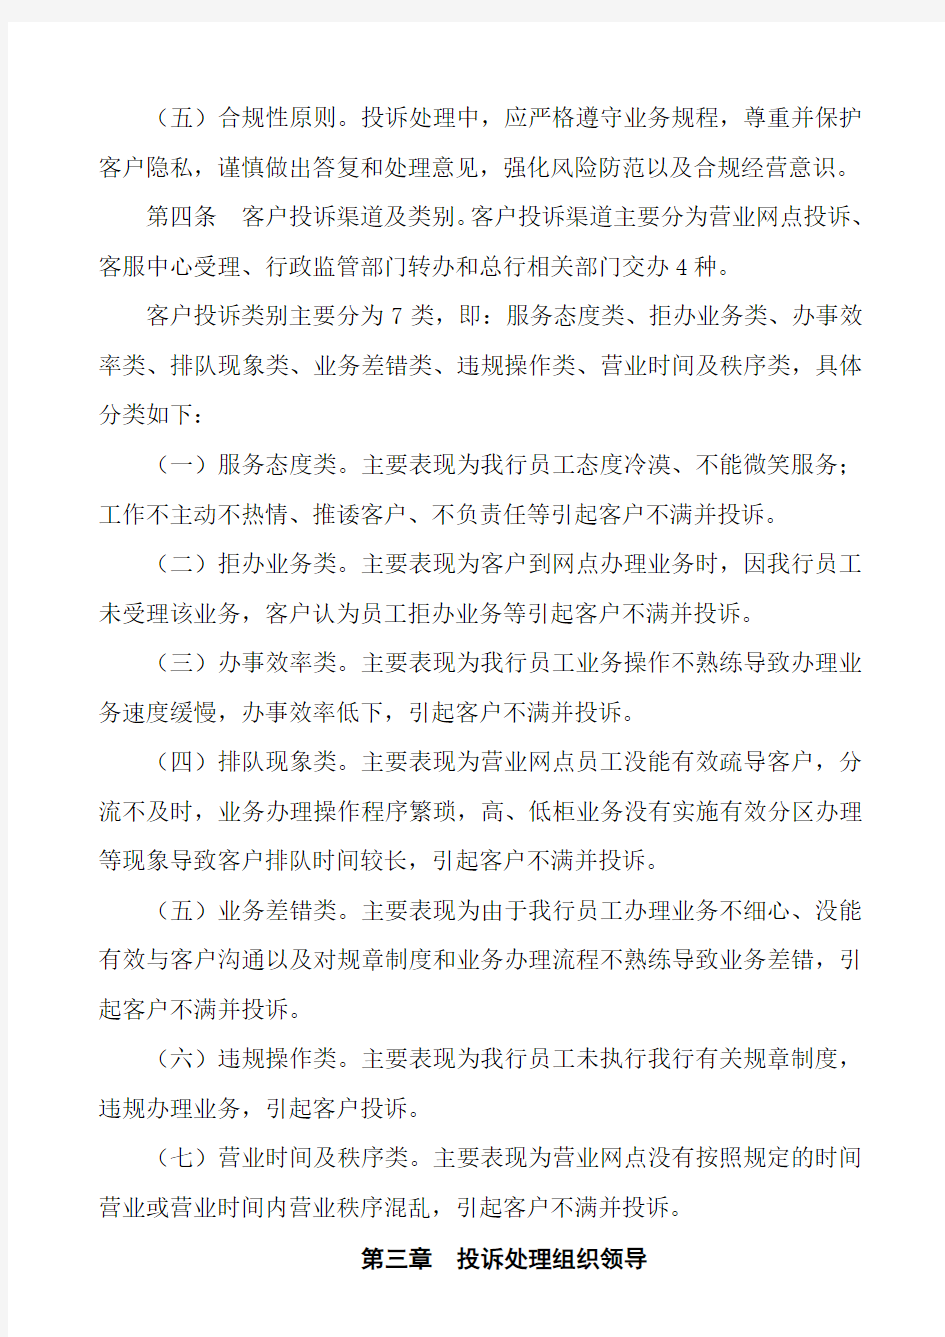 中国农业银行福建省分行客户投诉处理管理办法